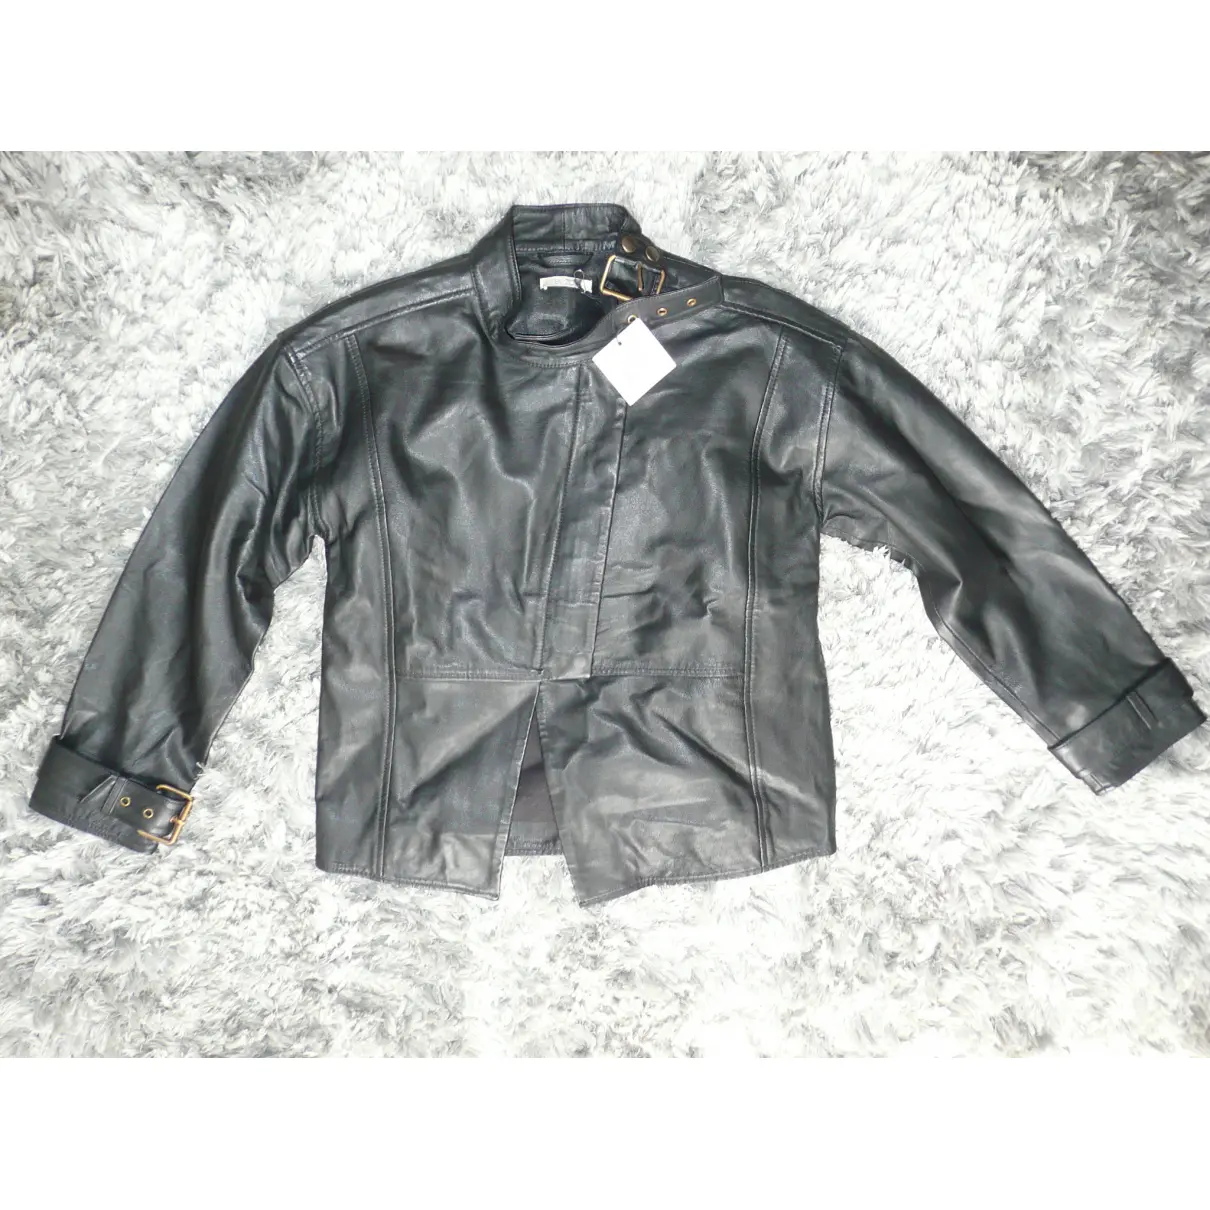 Leather biker jacket by Zoe